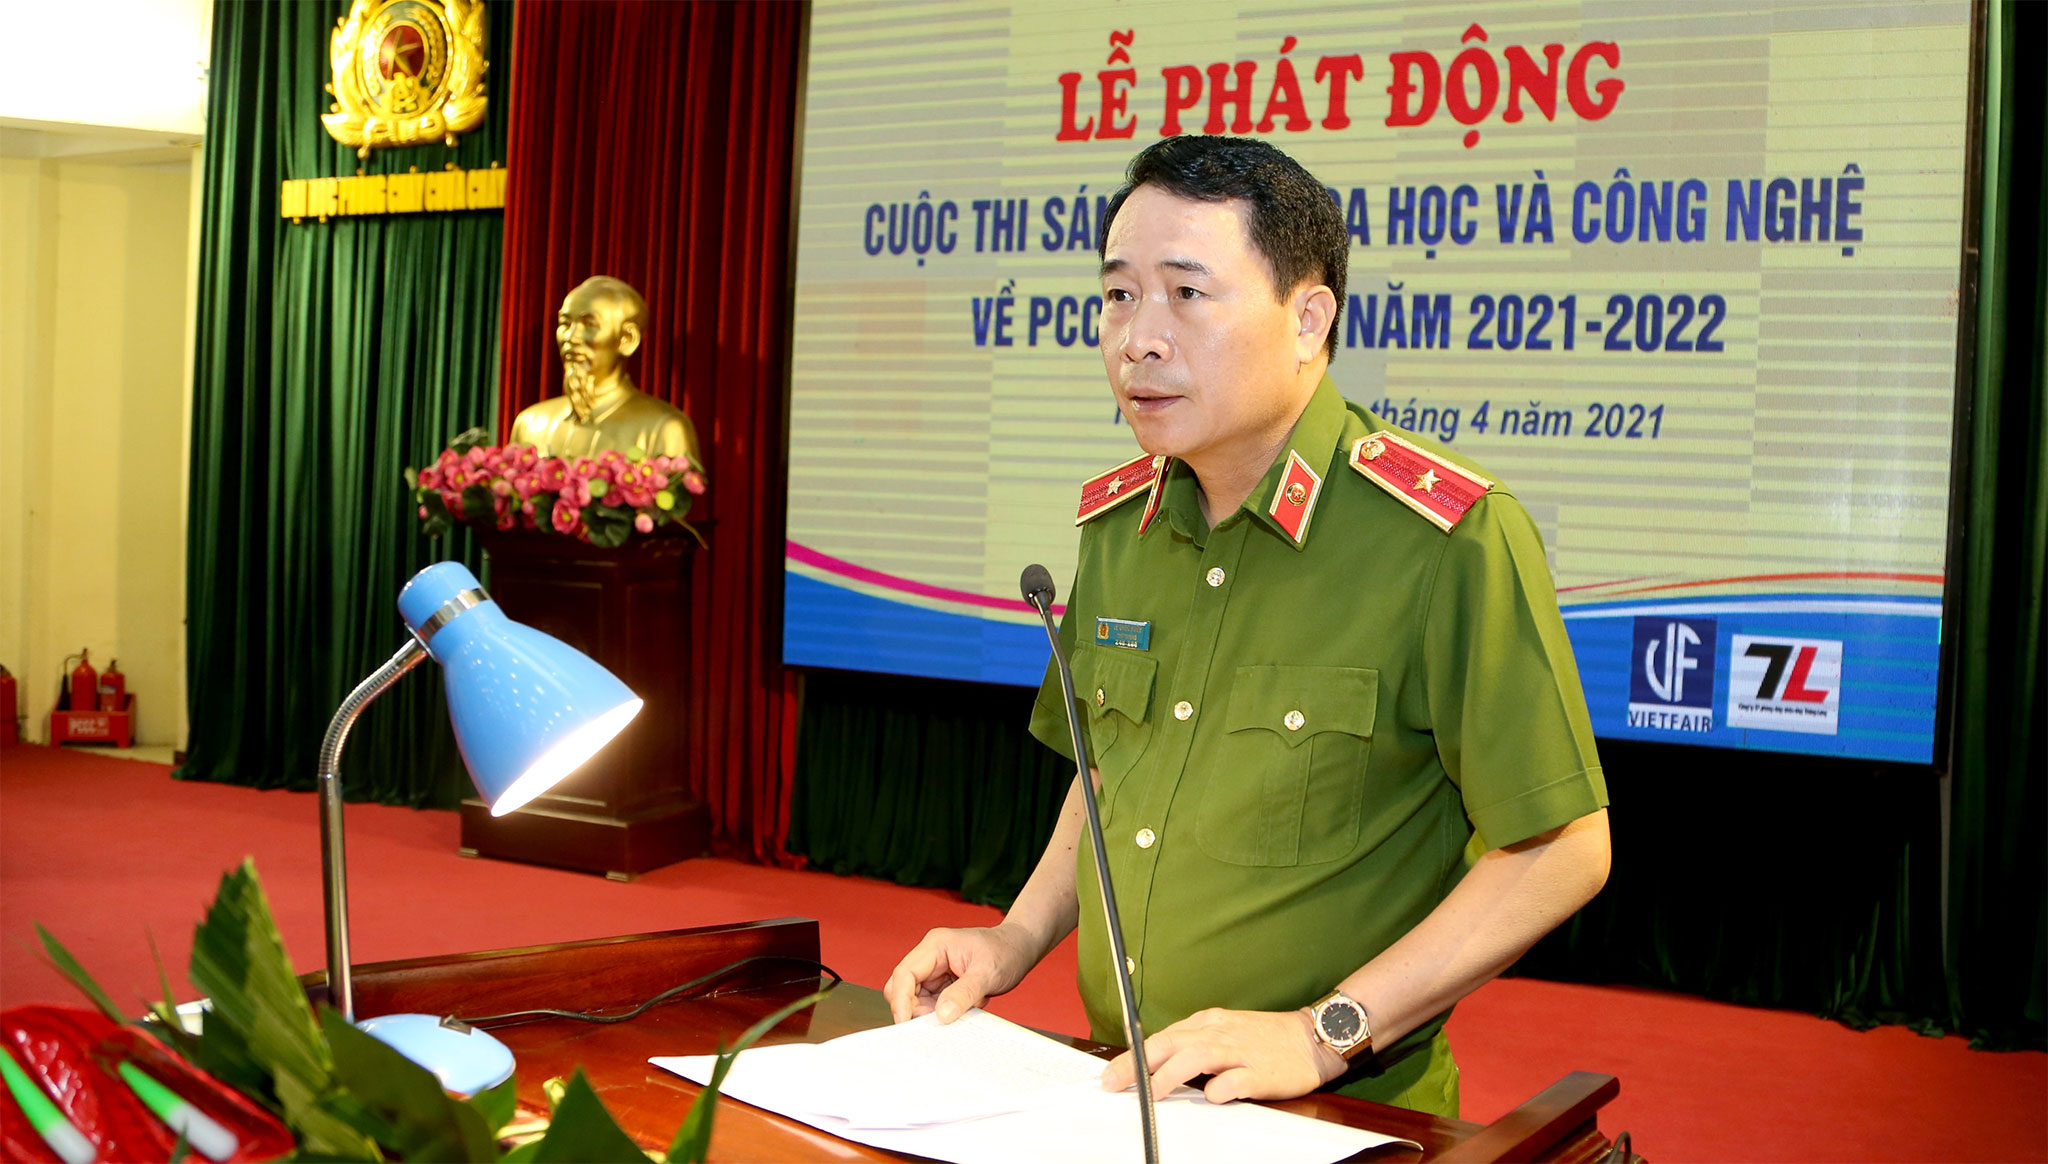 Thứ trưởng Bộ Công an, Thiếu tướng Lê Quốc Hùng phát biểu tại buổi lễ